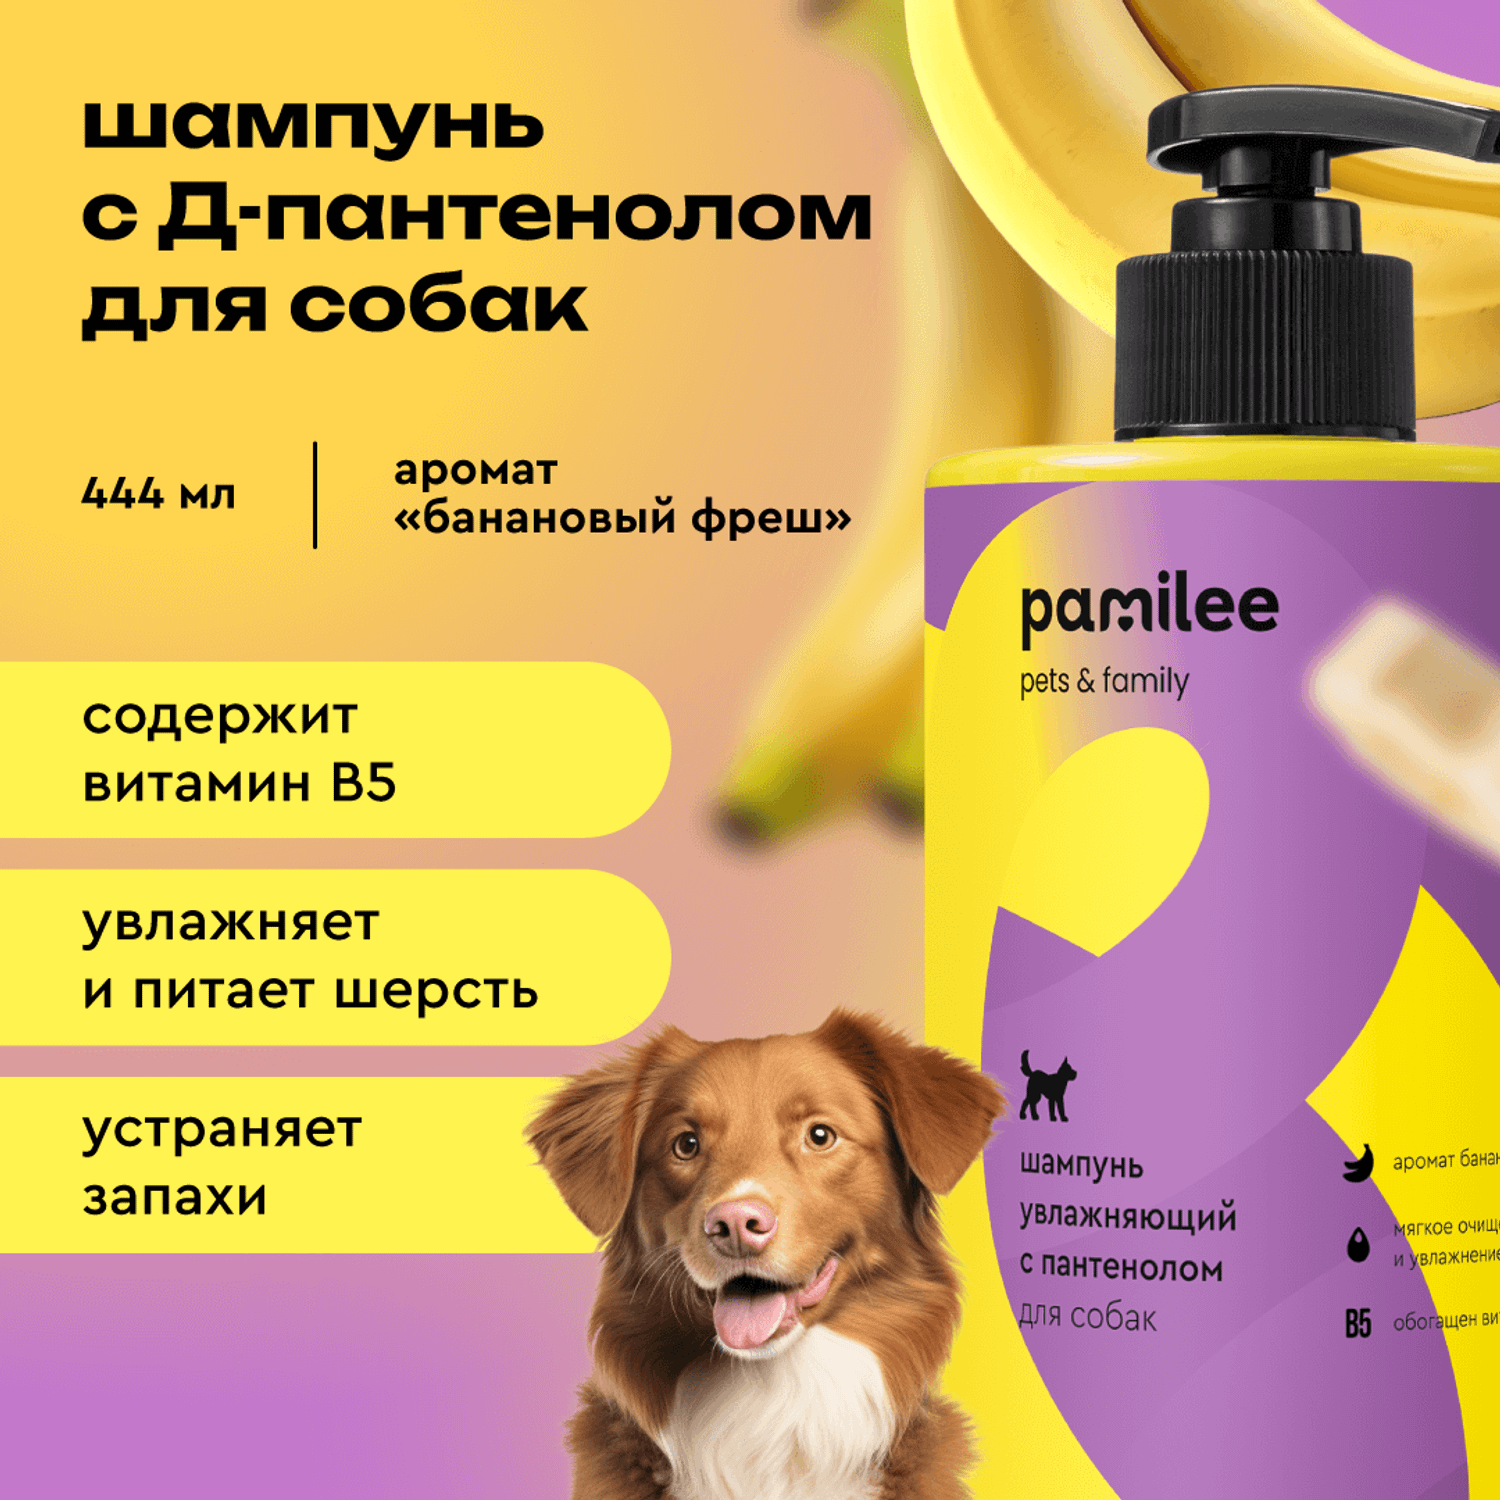 Шампунь с ароматом банана ProAnimal универсальный домашний увлажняющий для собак - фото 1